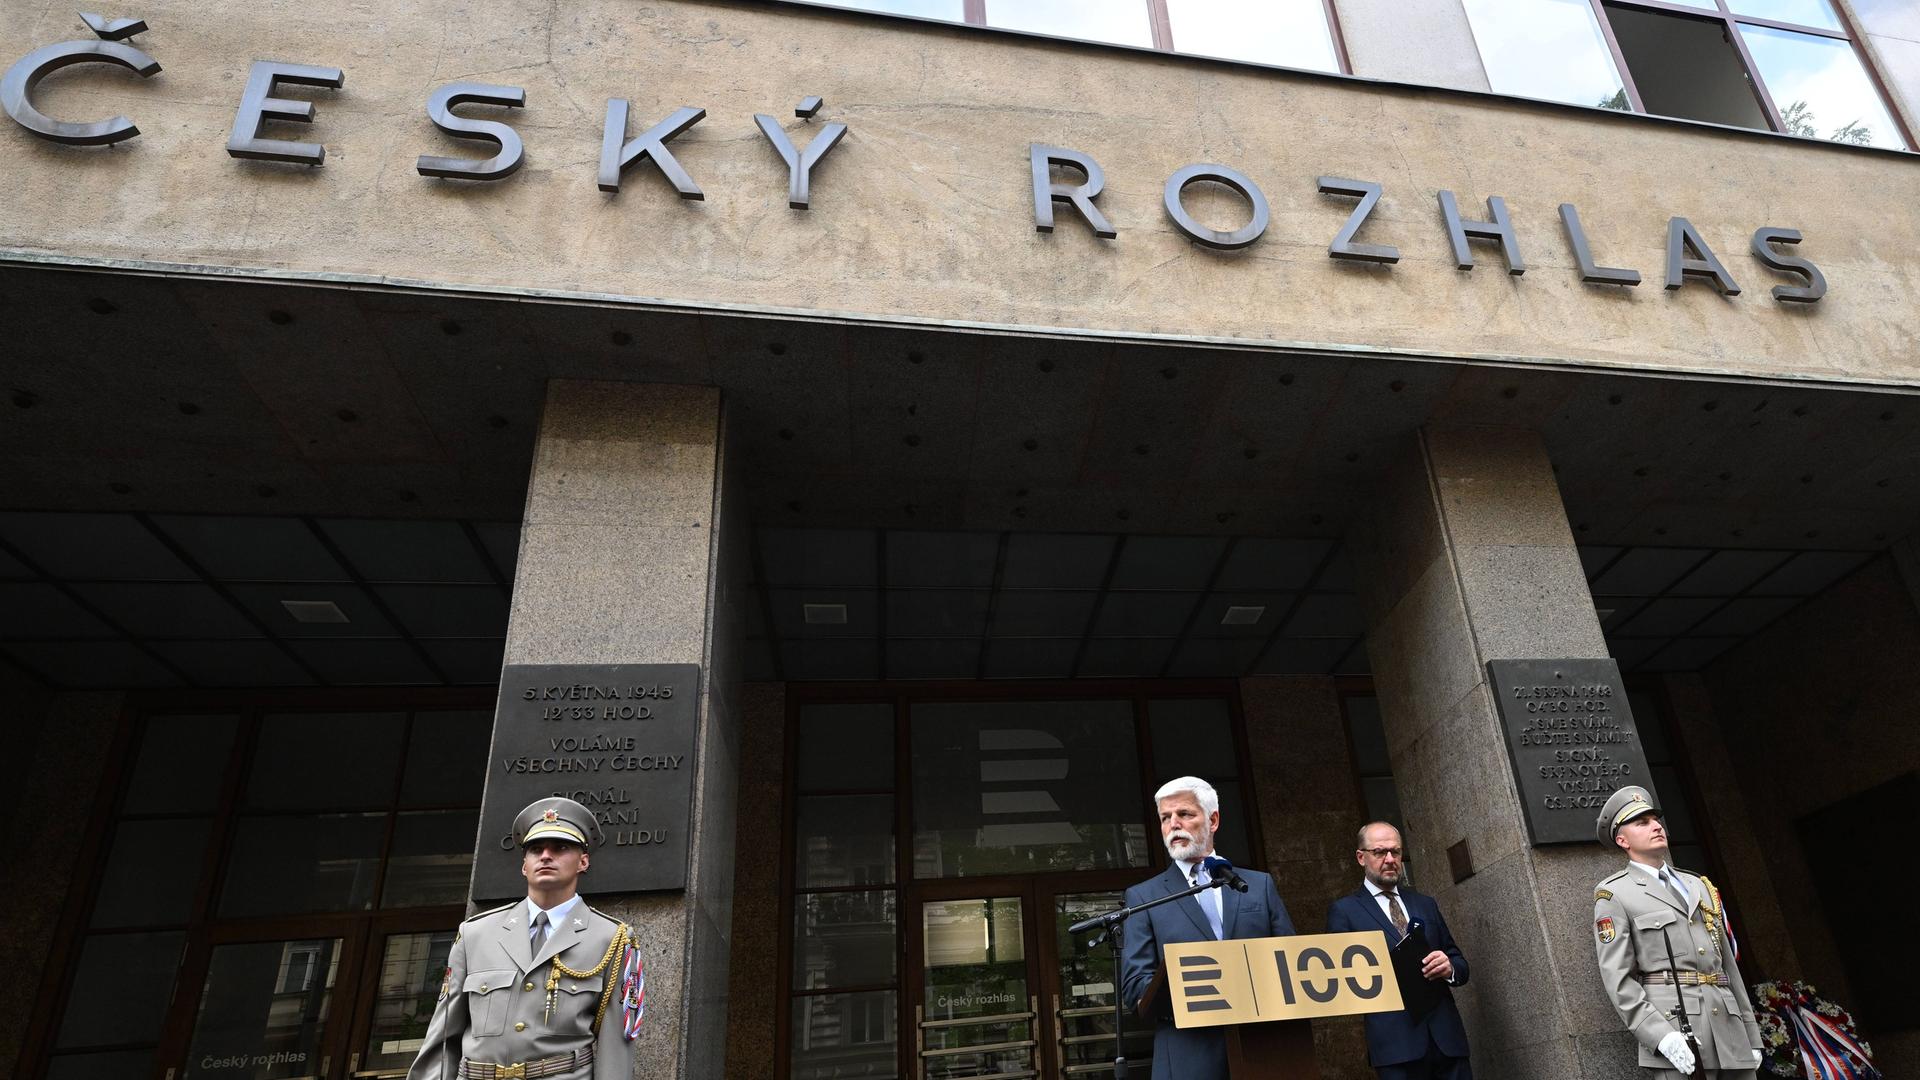 Der tschechische Präsident Petr Pavel vor dem Gebäude von Český rozhlas, dem öffentlich-rechtlichen Radio im Land.